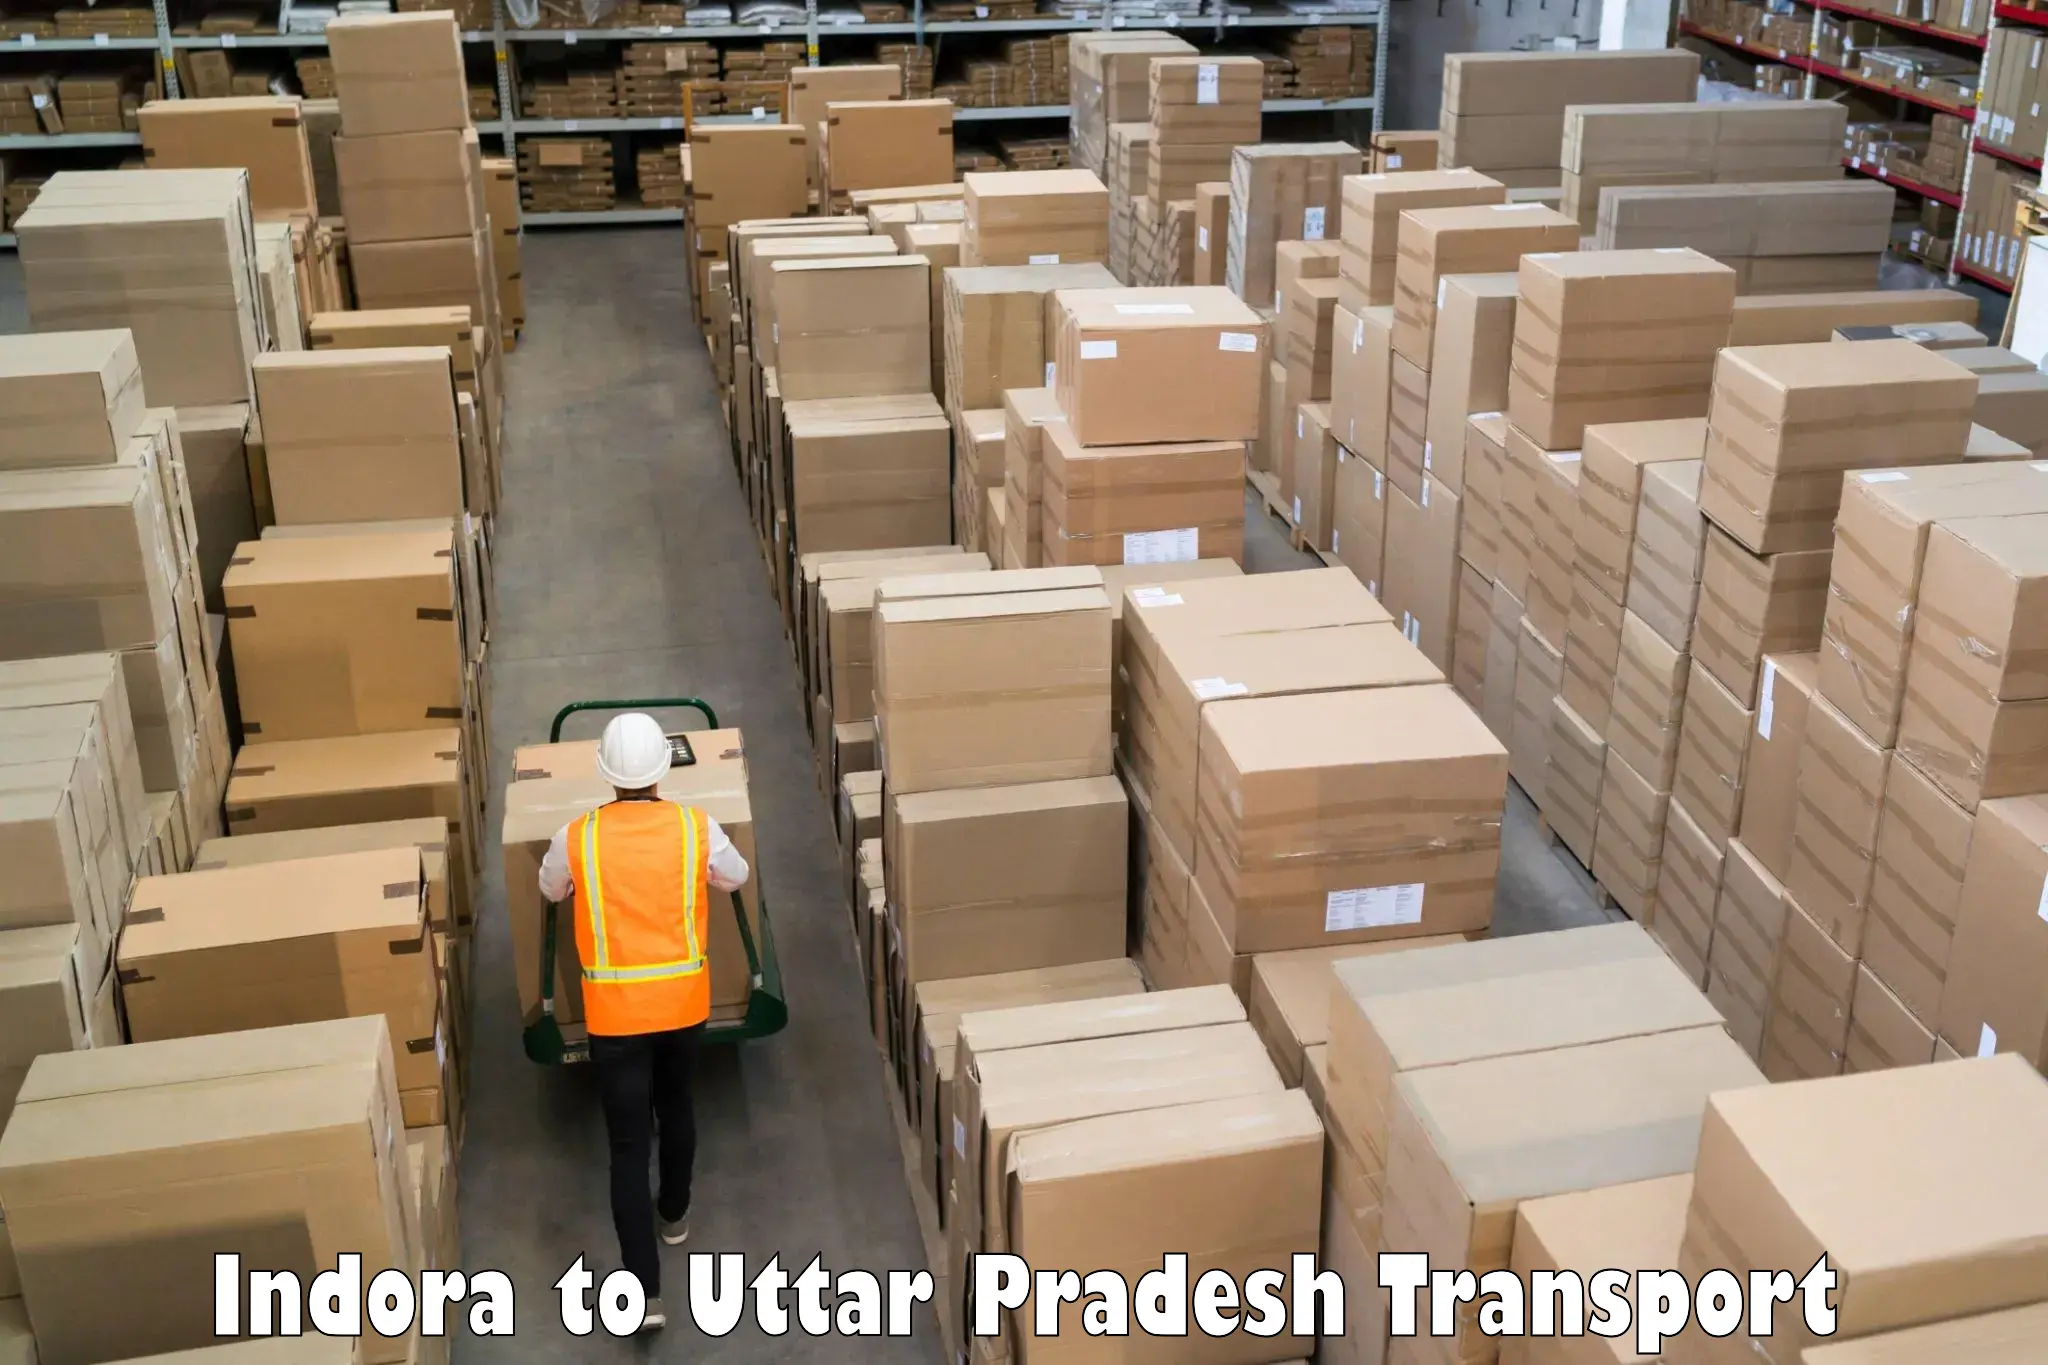 Parcel transport services Indora to Koraon